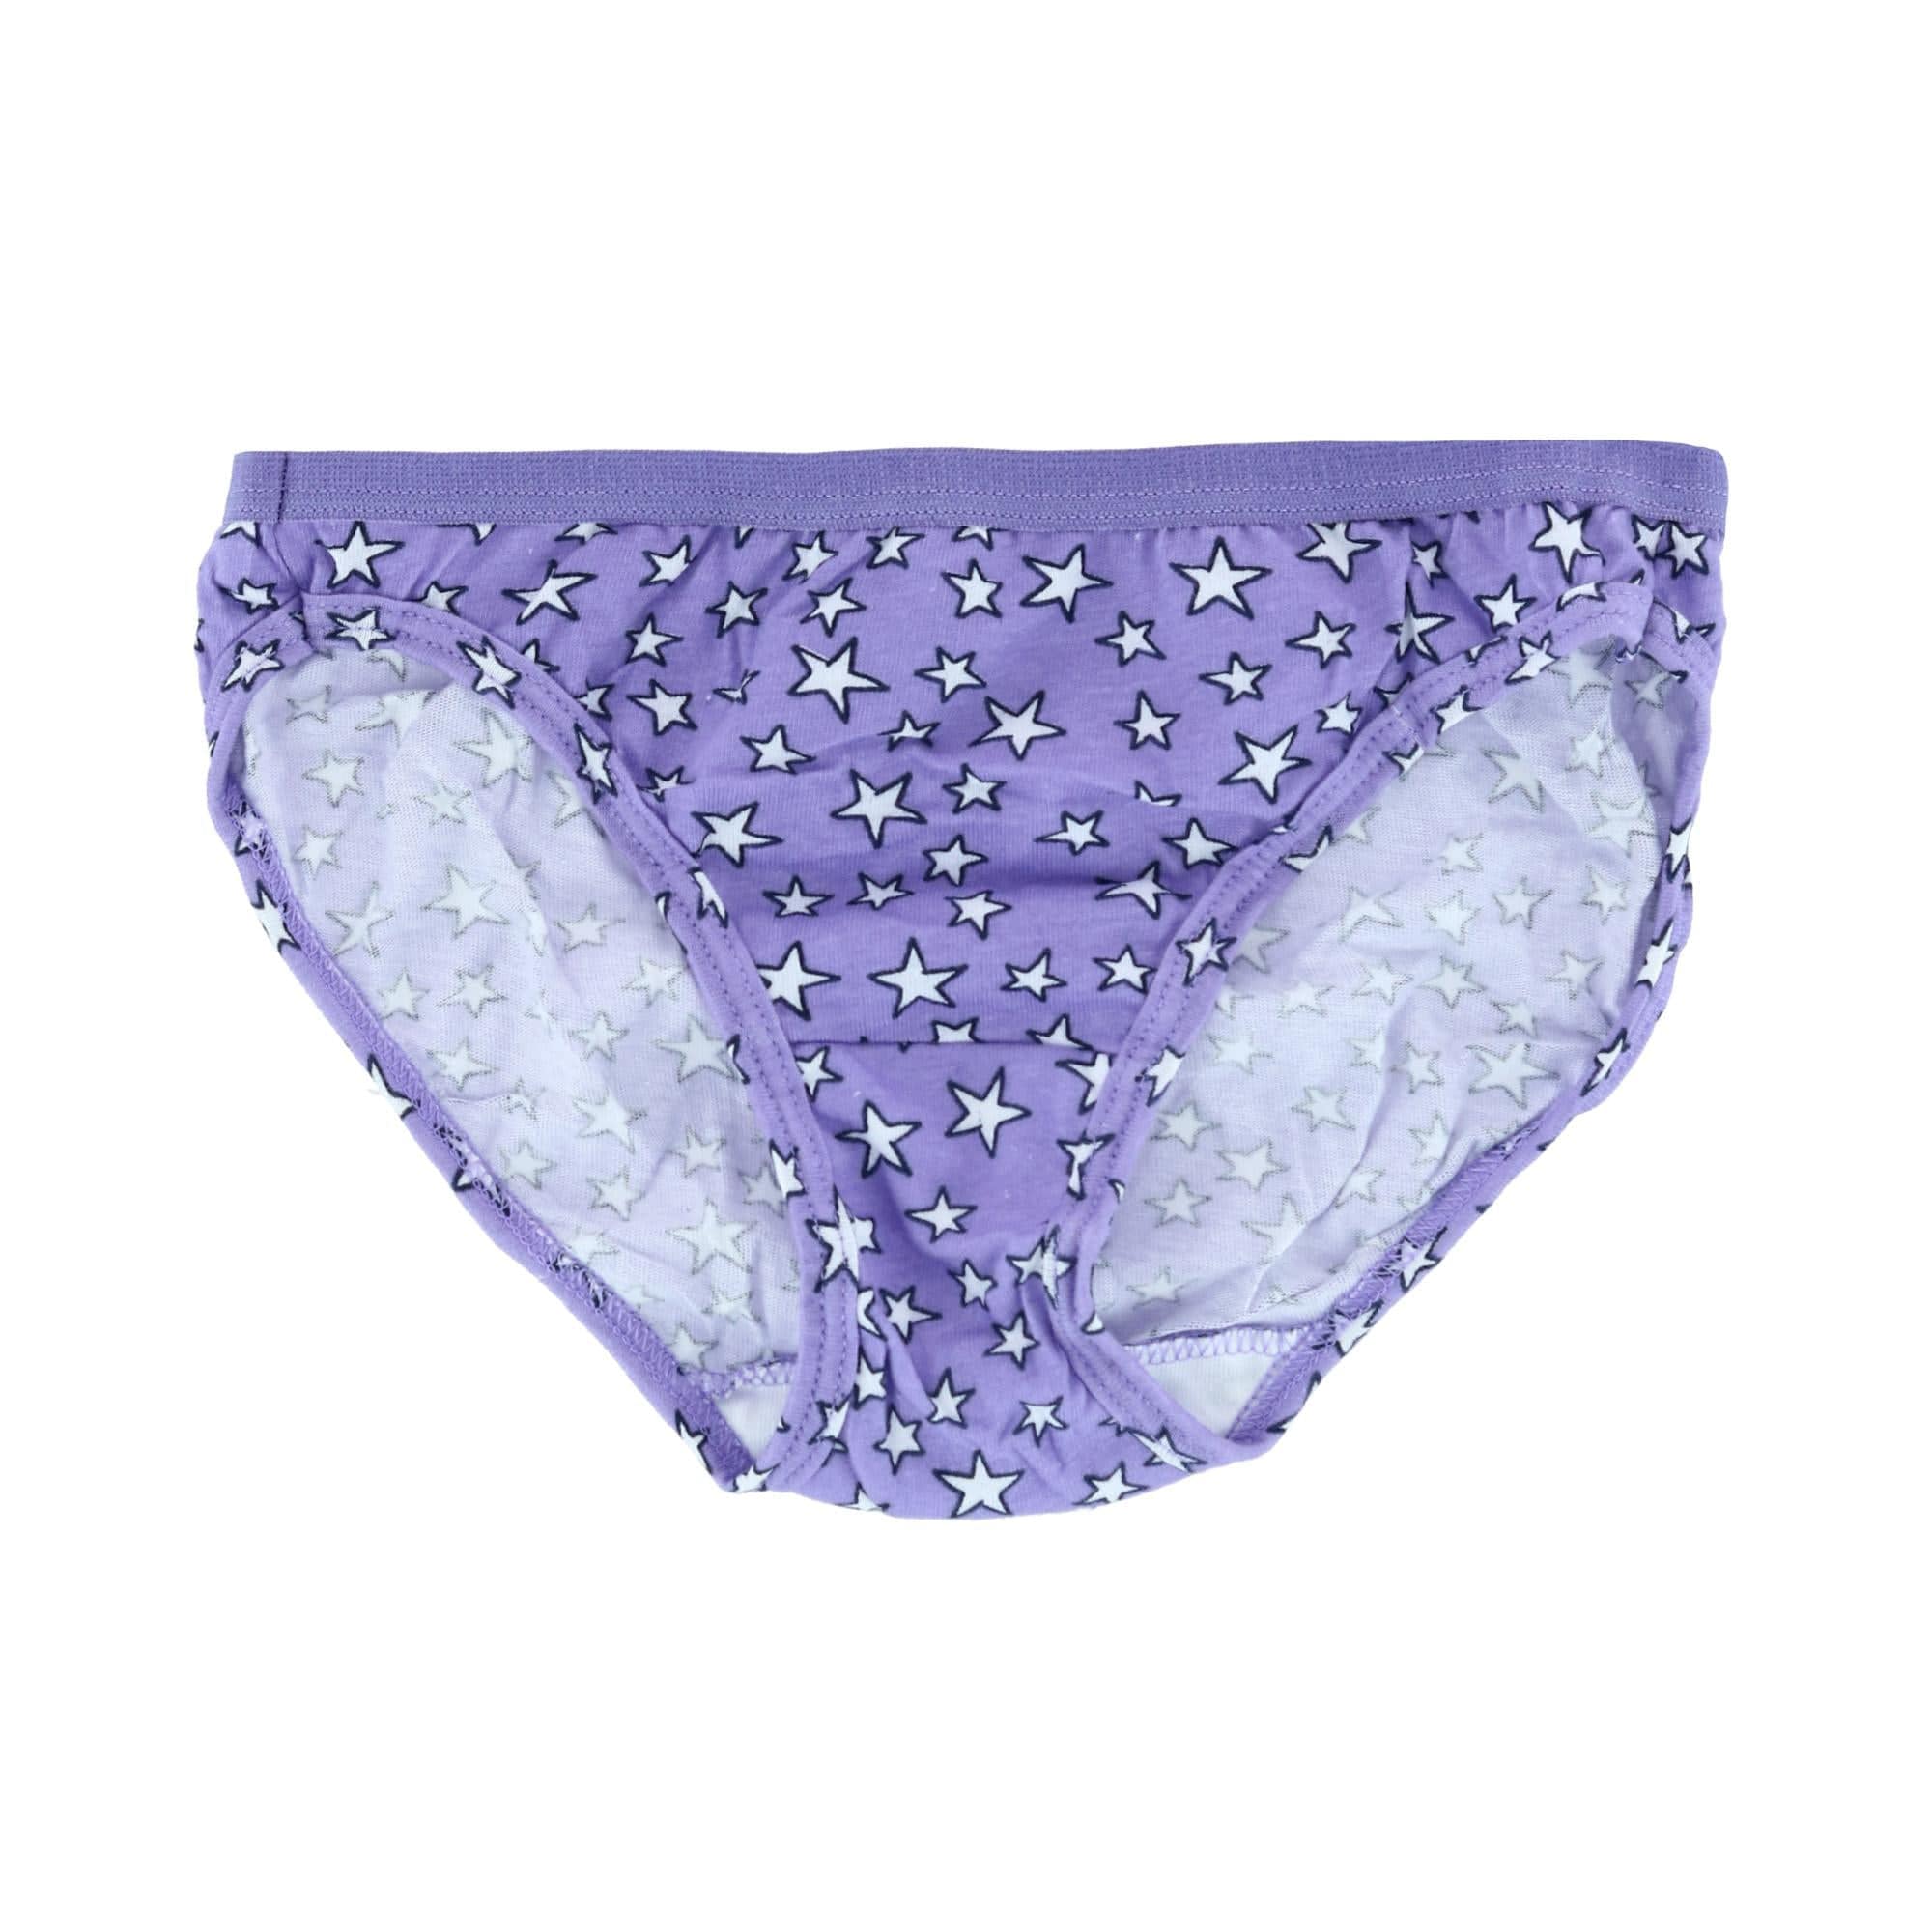 Hanes Girls' Cotton Bikini Underwear, 10-Pack Assorted 1 6 